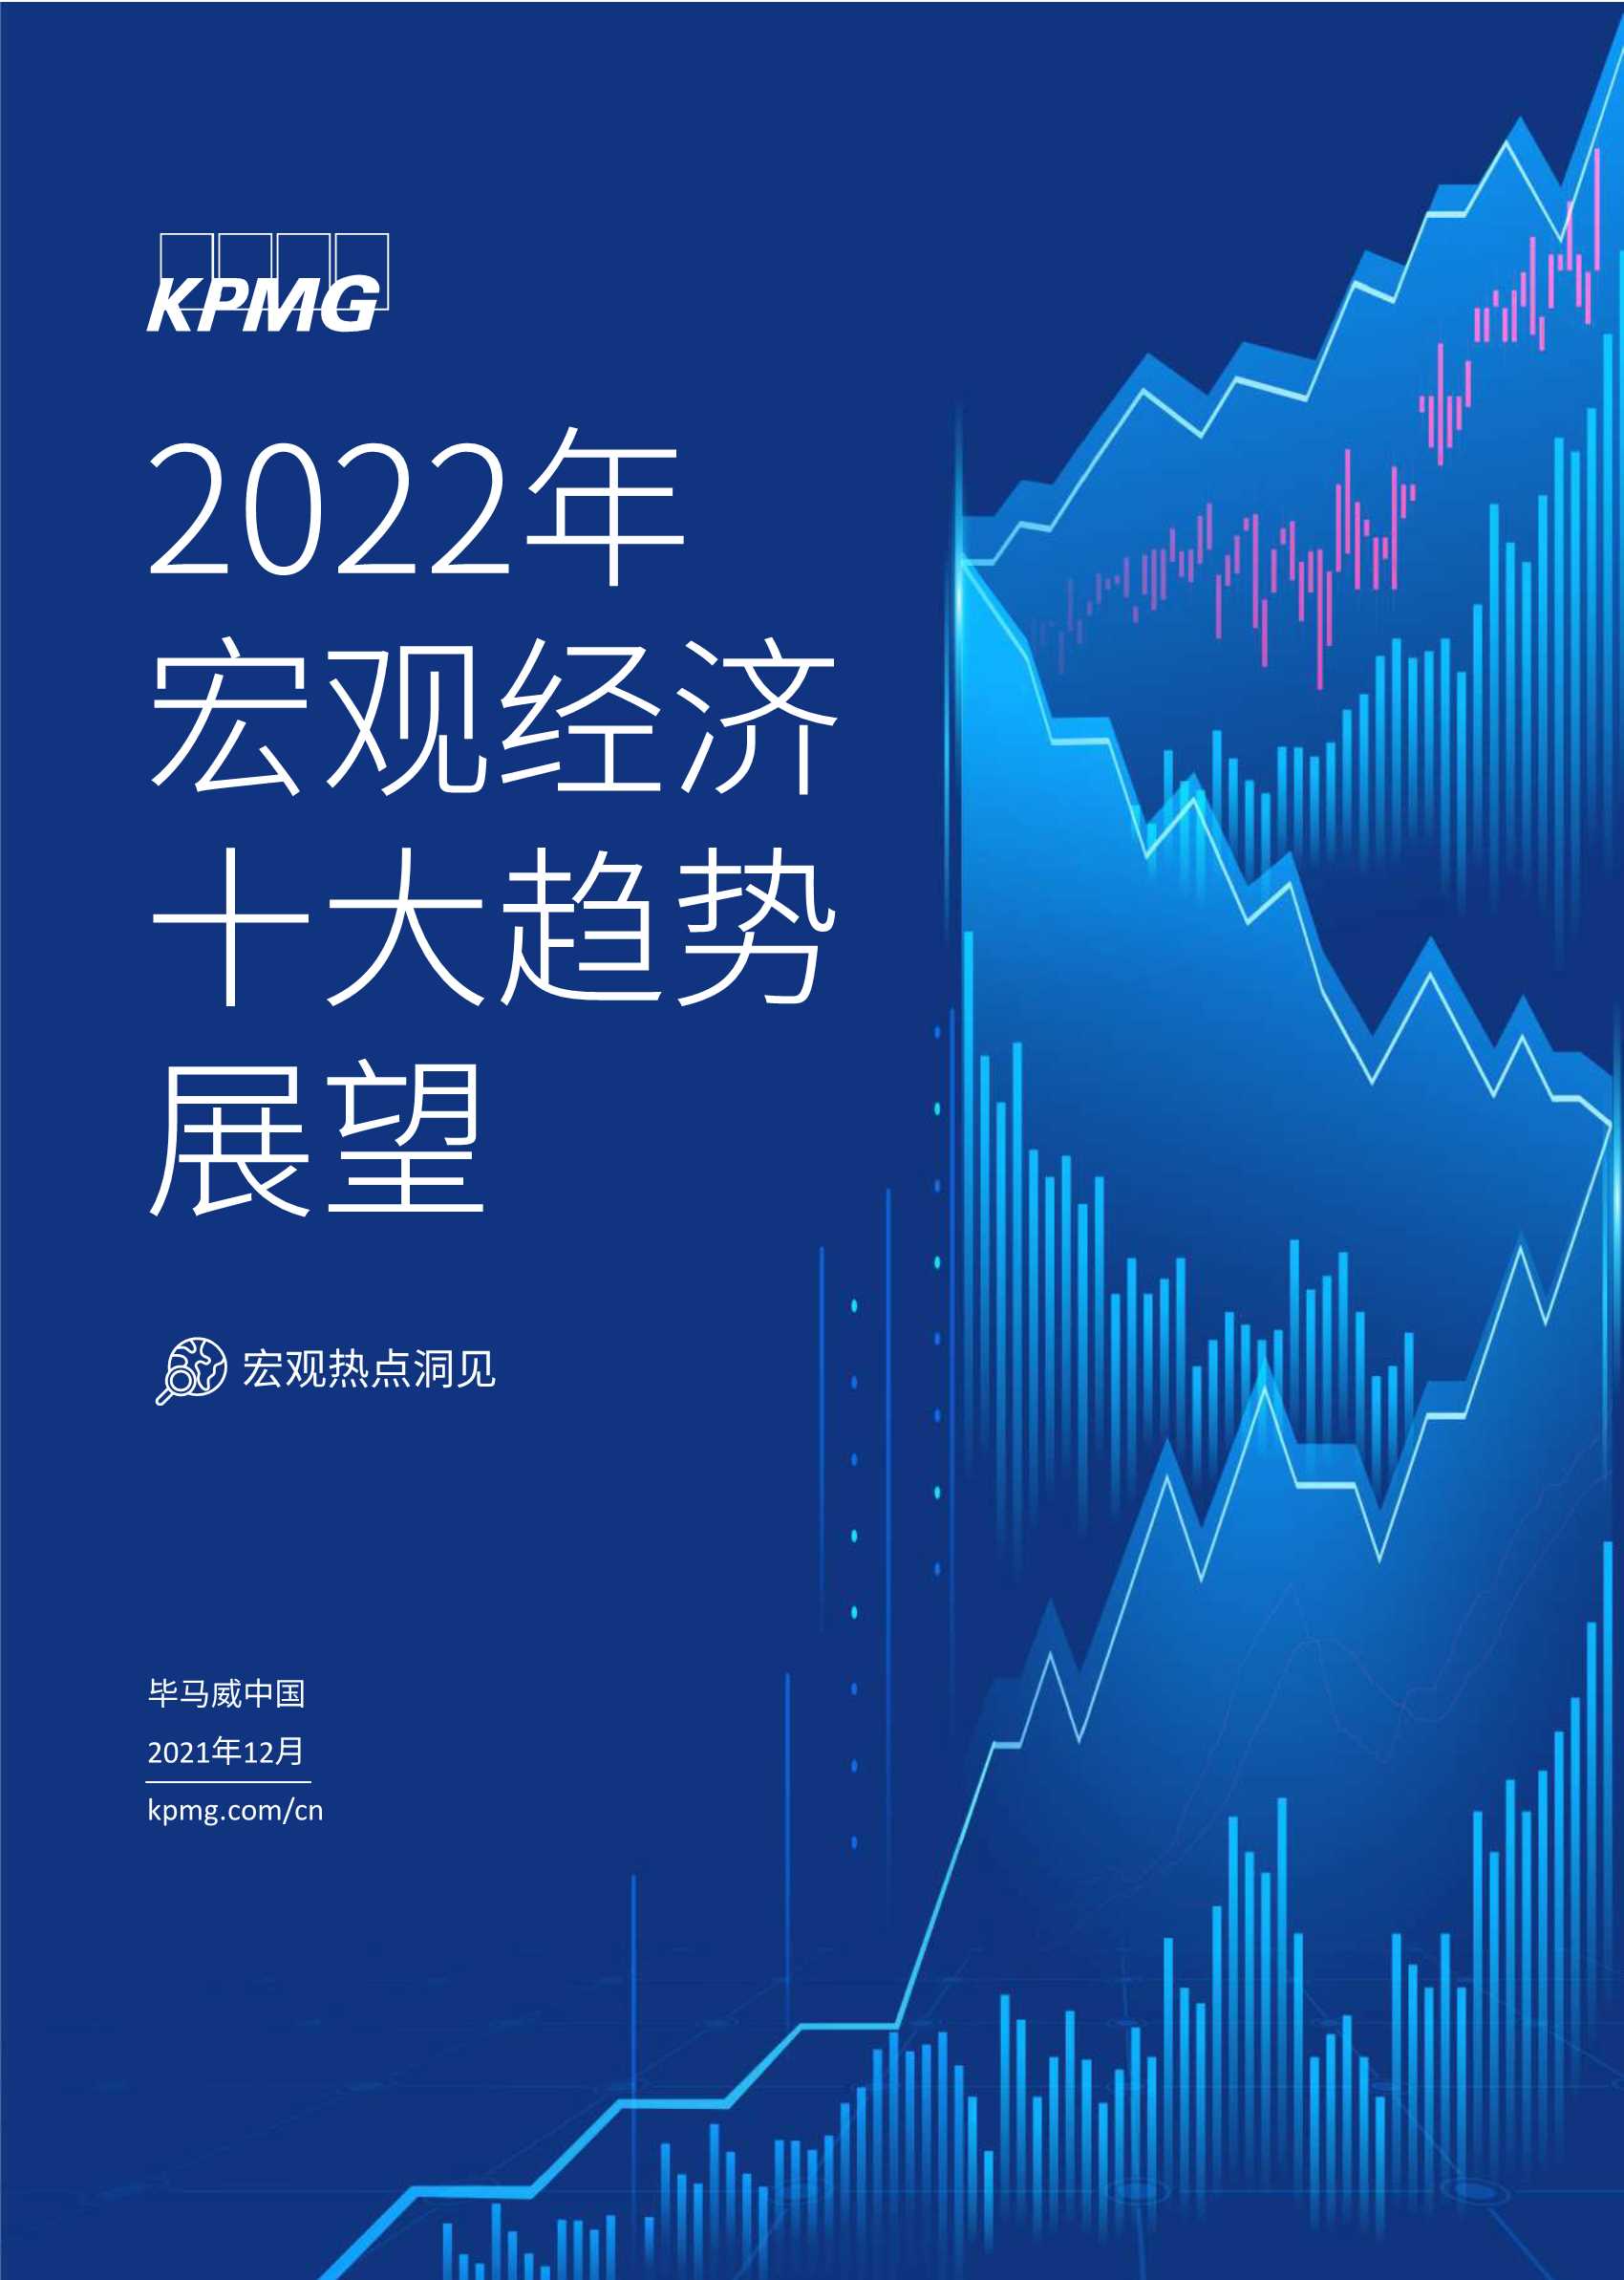 毕马威-2022年宏观经济十大趋势展望-2021.12-22页